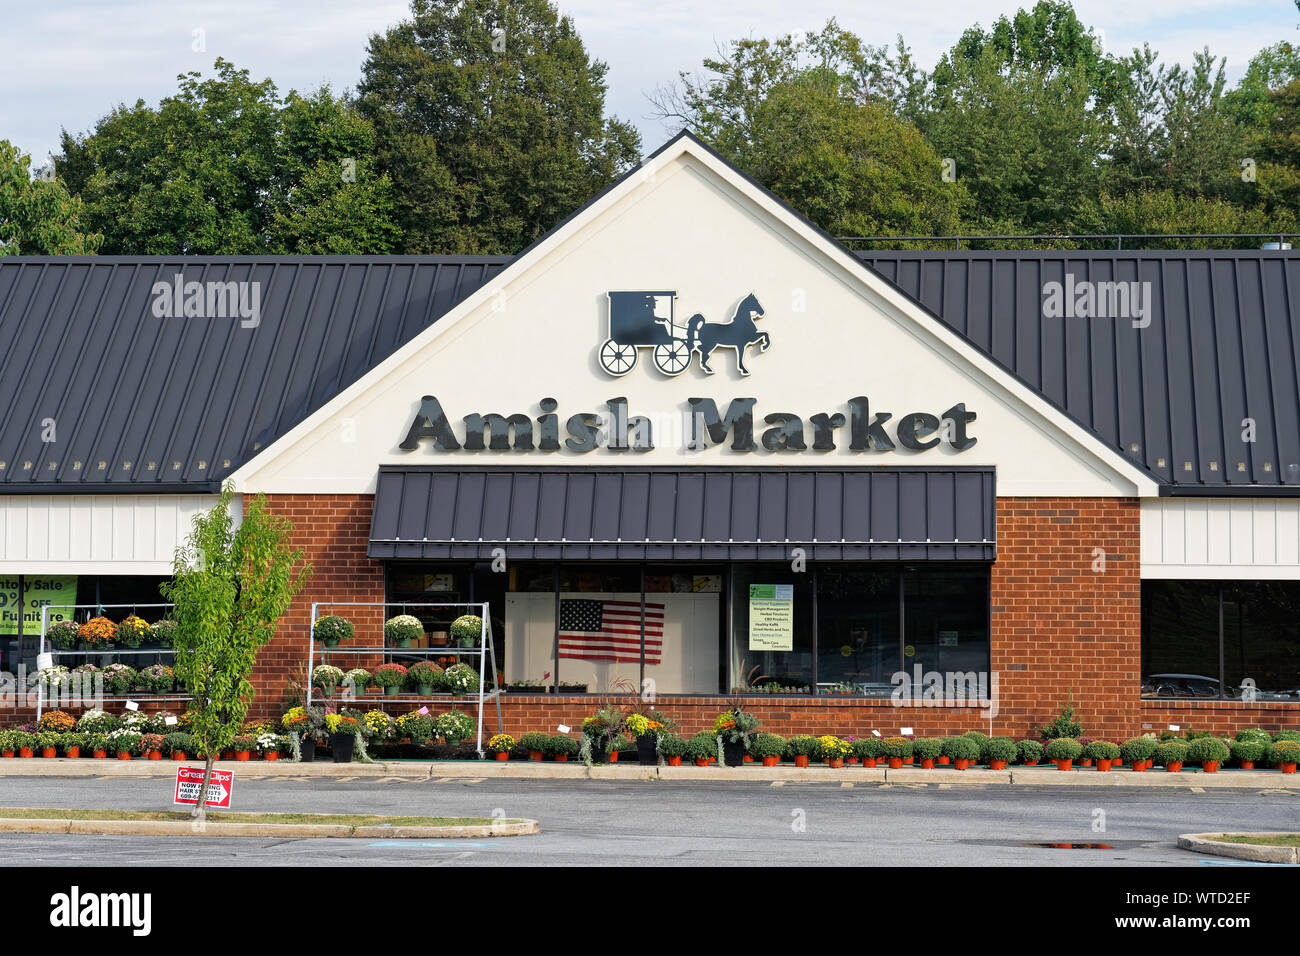 West Chester, PA - sett. 8, 2019: il mercato Amish situato nel Westtown Village Shopping Center aperto Gio Ven e Sab, ha più di 15 mercanti Foto Stock